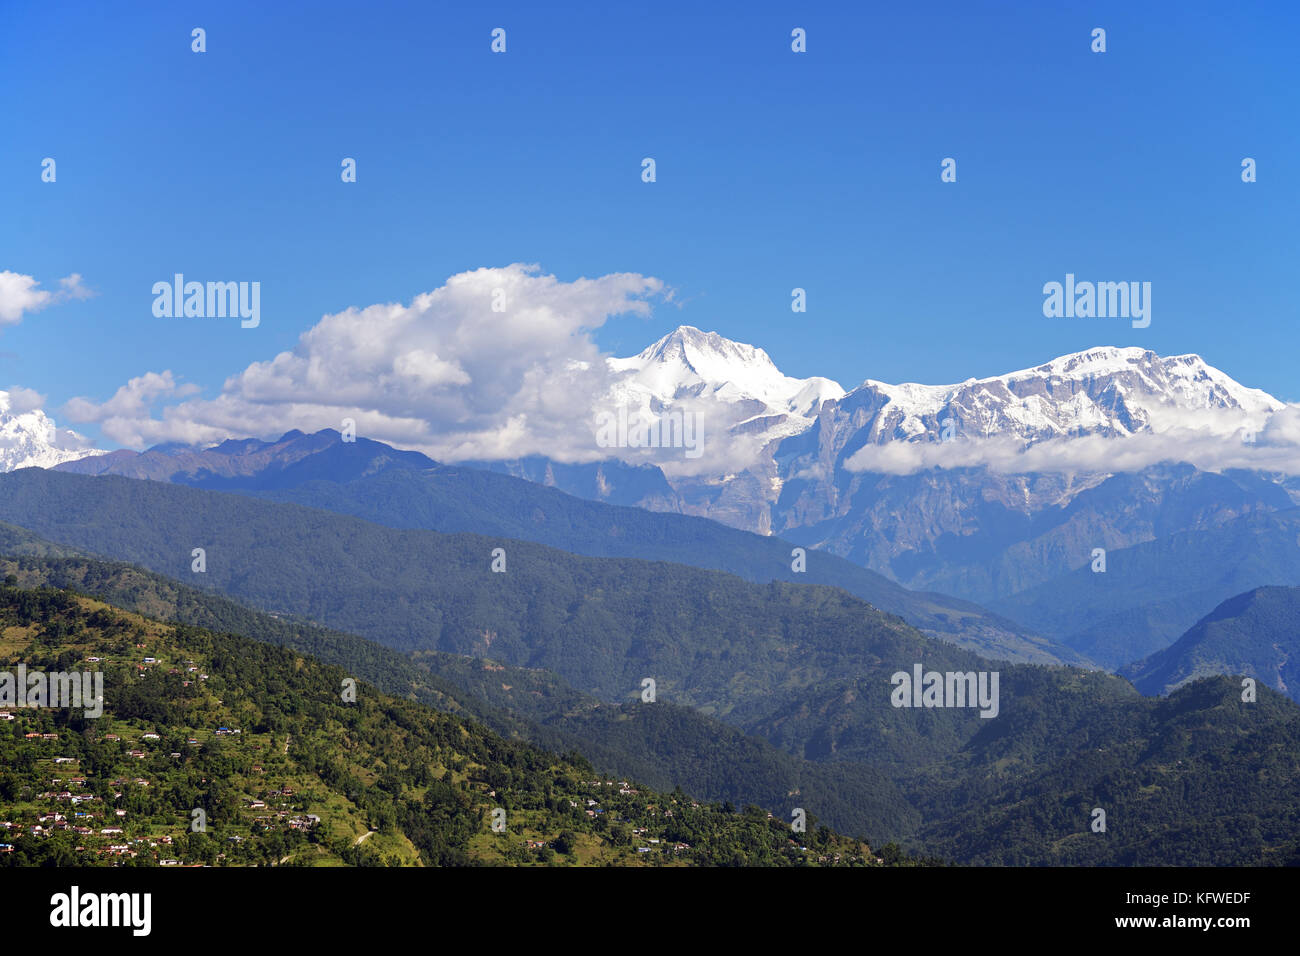 Die Annapurna Massiv im Himalaya ist in nord-zentralen Nepal. Es erreicht eine Höhe von über 8000 m (annapurna i). Stockfoto